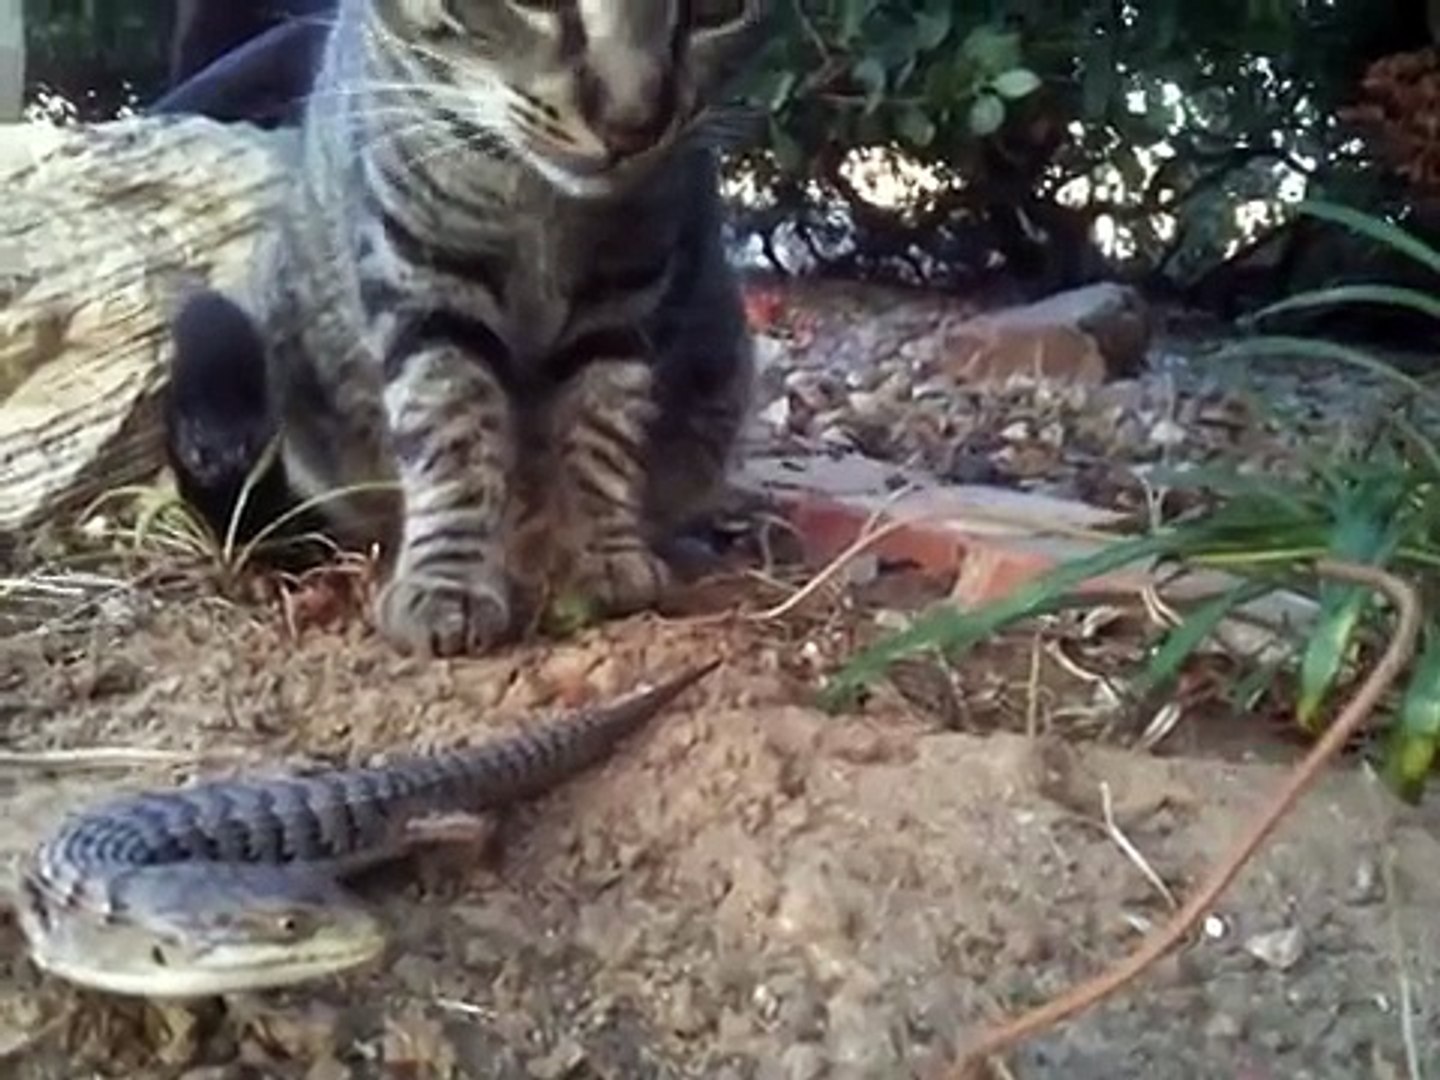 Cat vs. Alligator Lizard